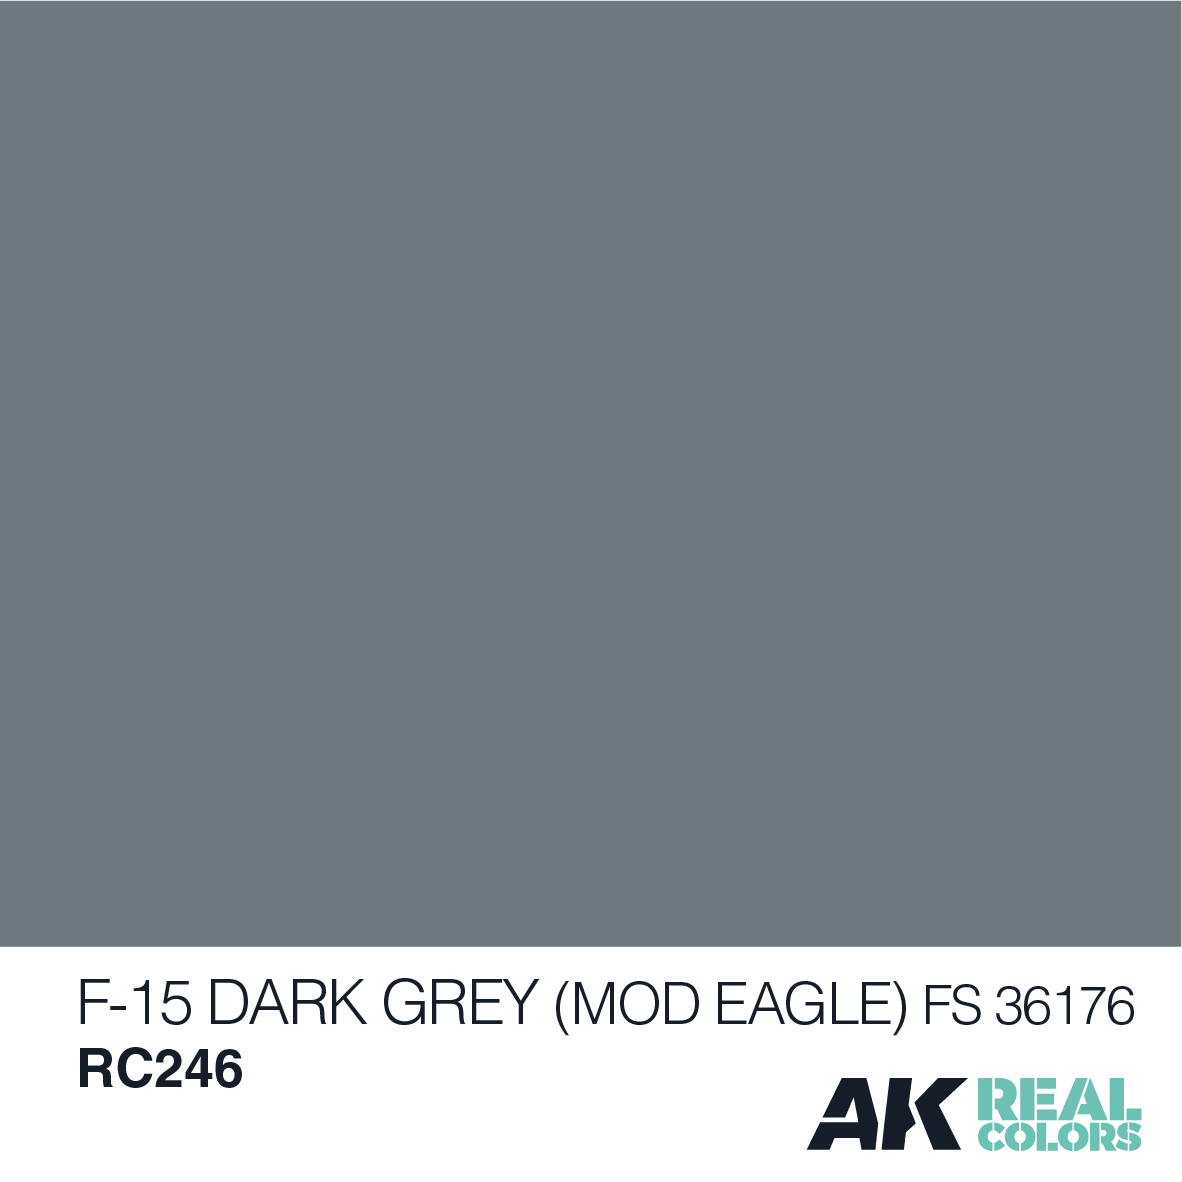 F-15 Dark Grey (MOD EAGLE) FS 36176